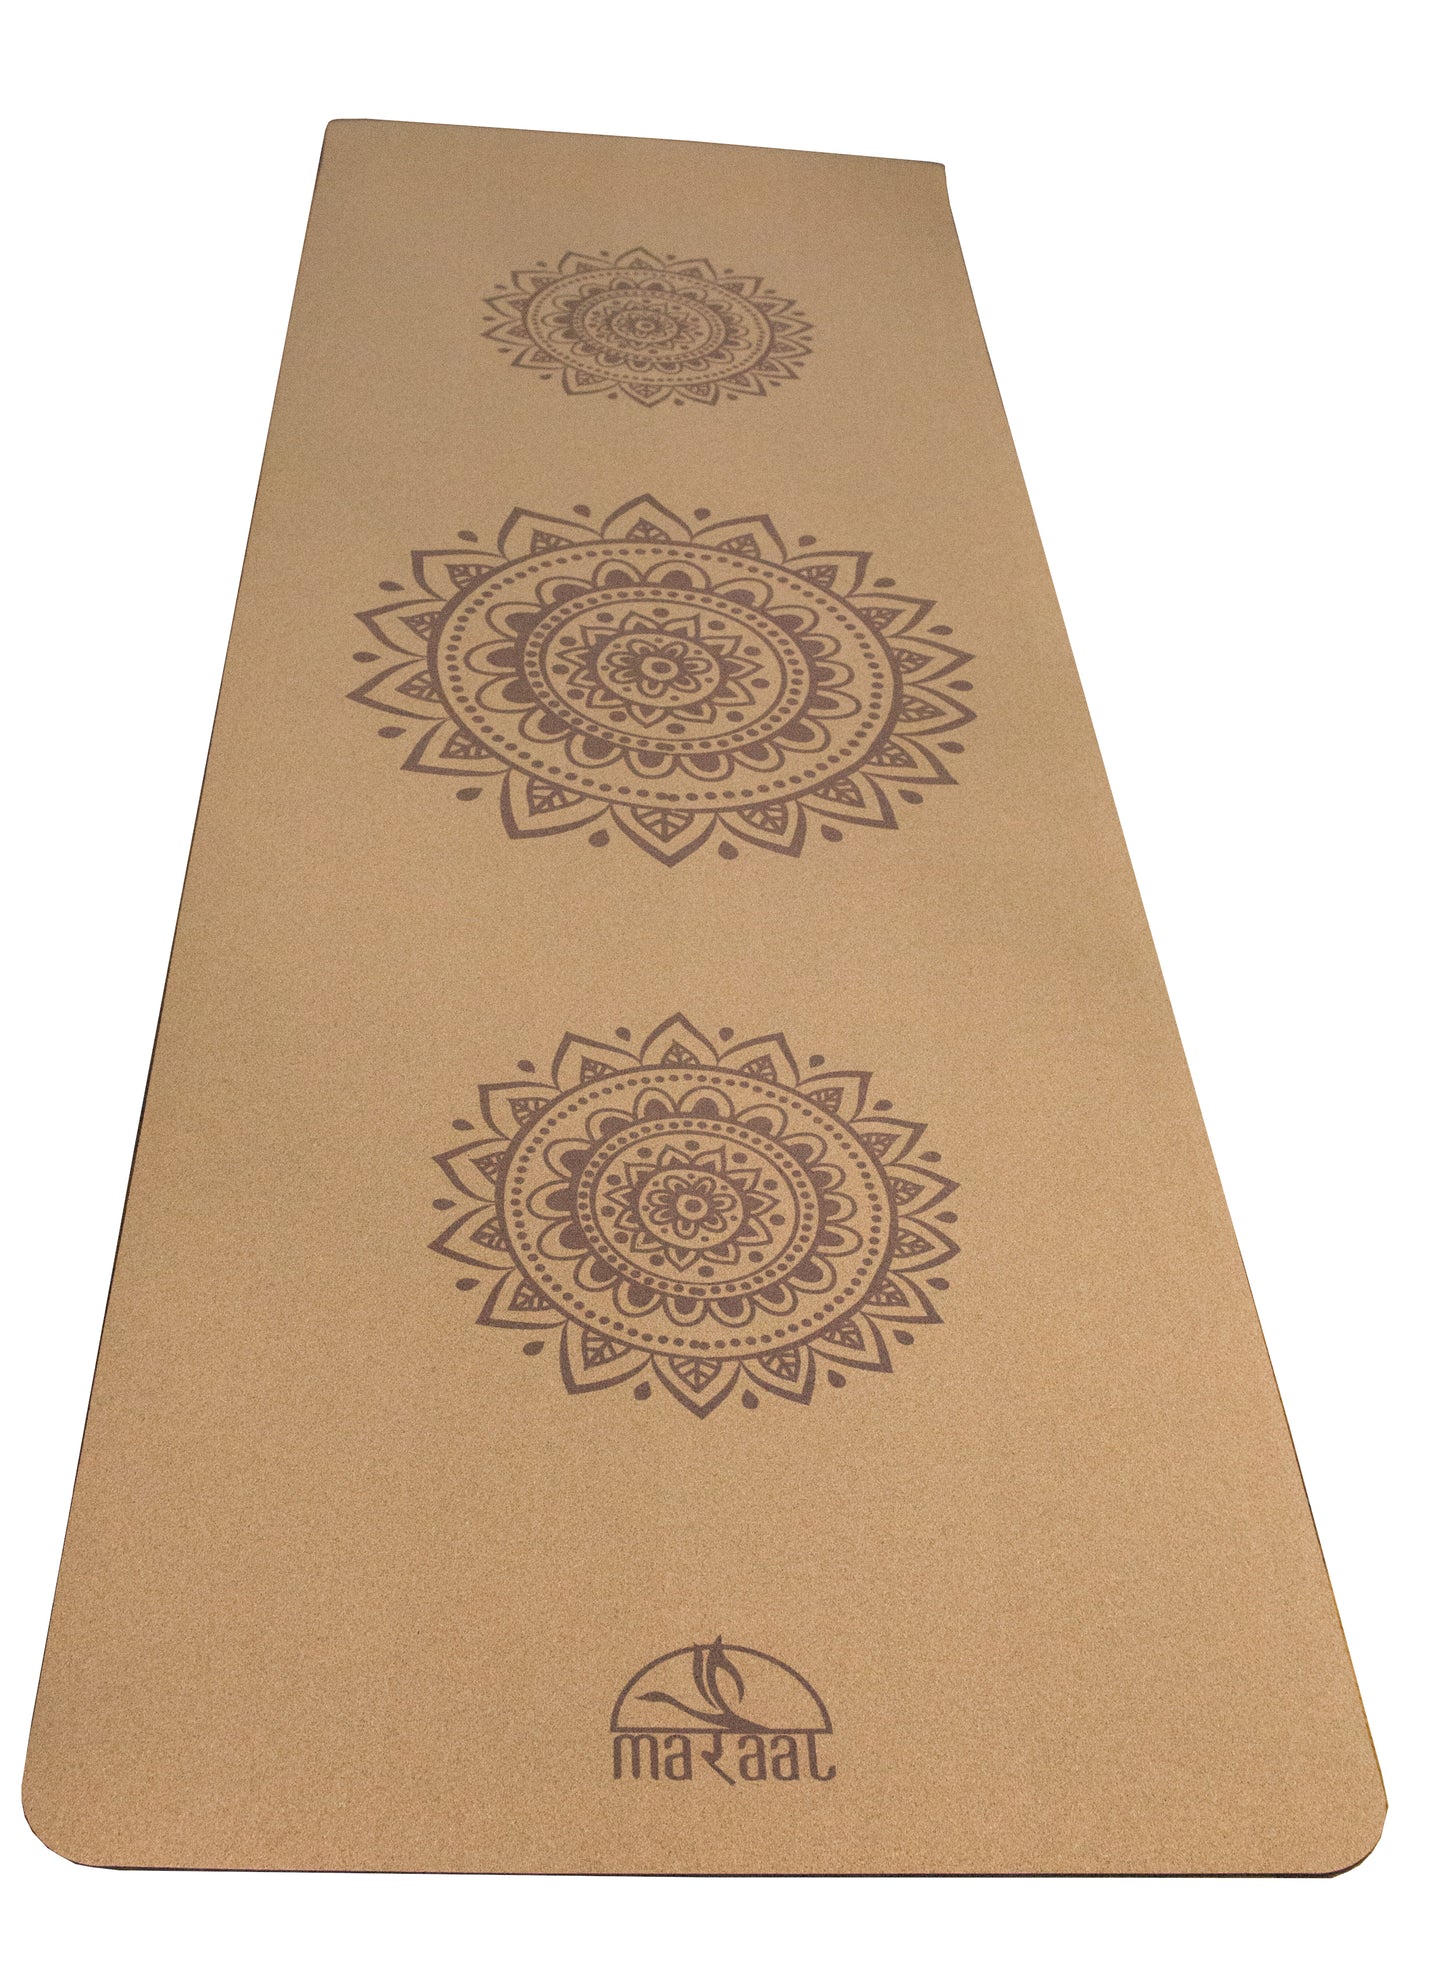 MARAAL Taru Dedication Organic Cork & Natural Rubber Yoga Mat- Mandala